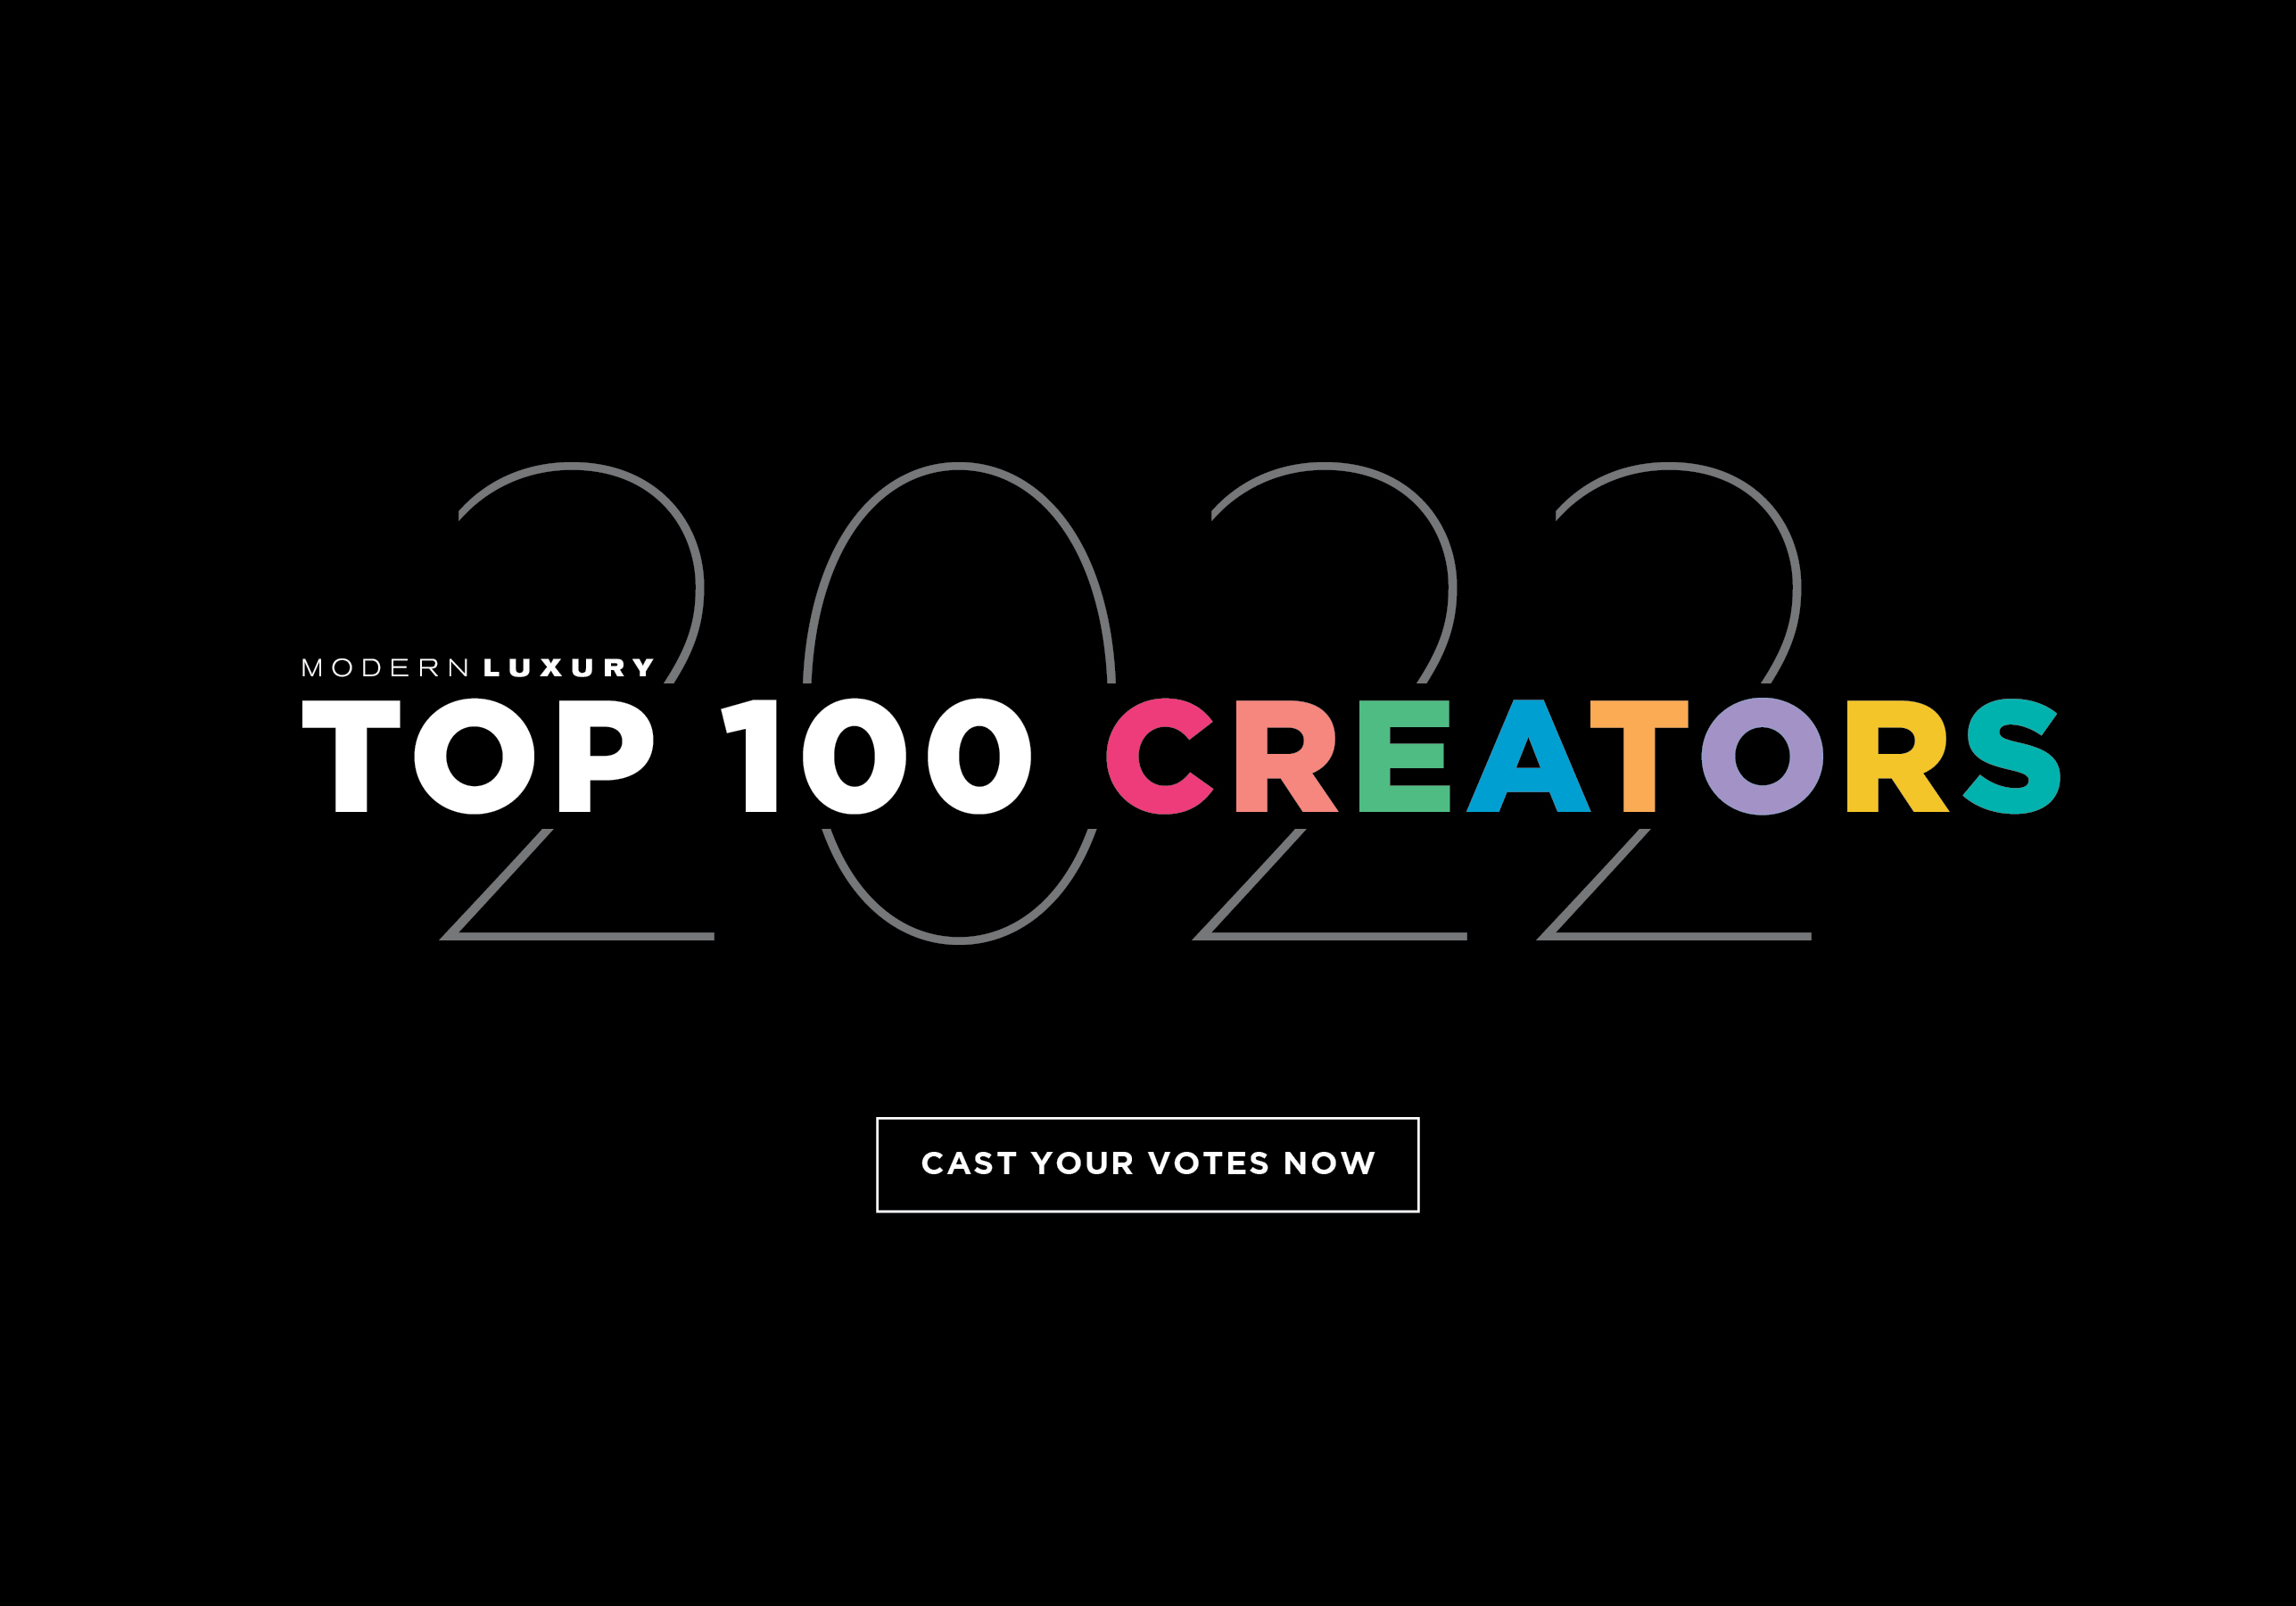 Top 100 Creators